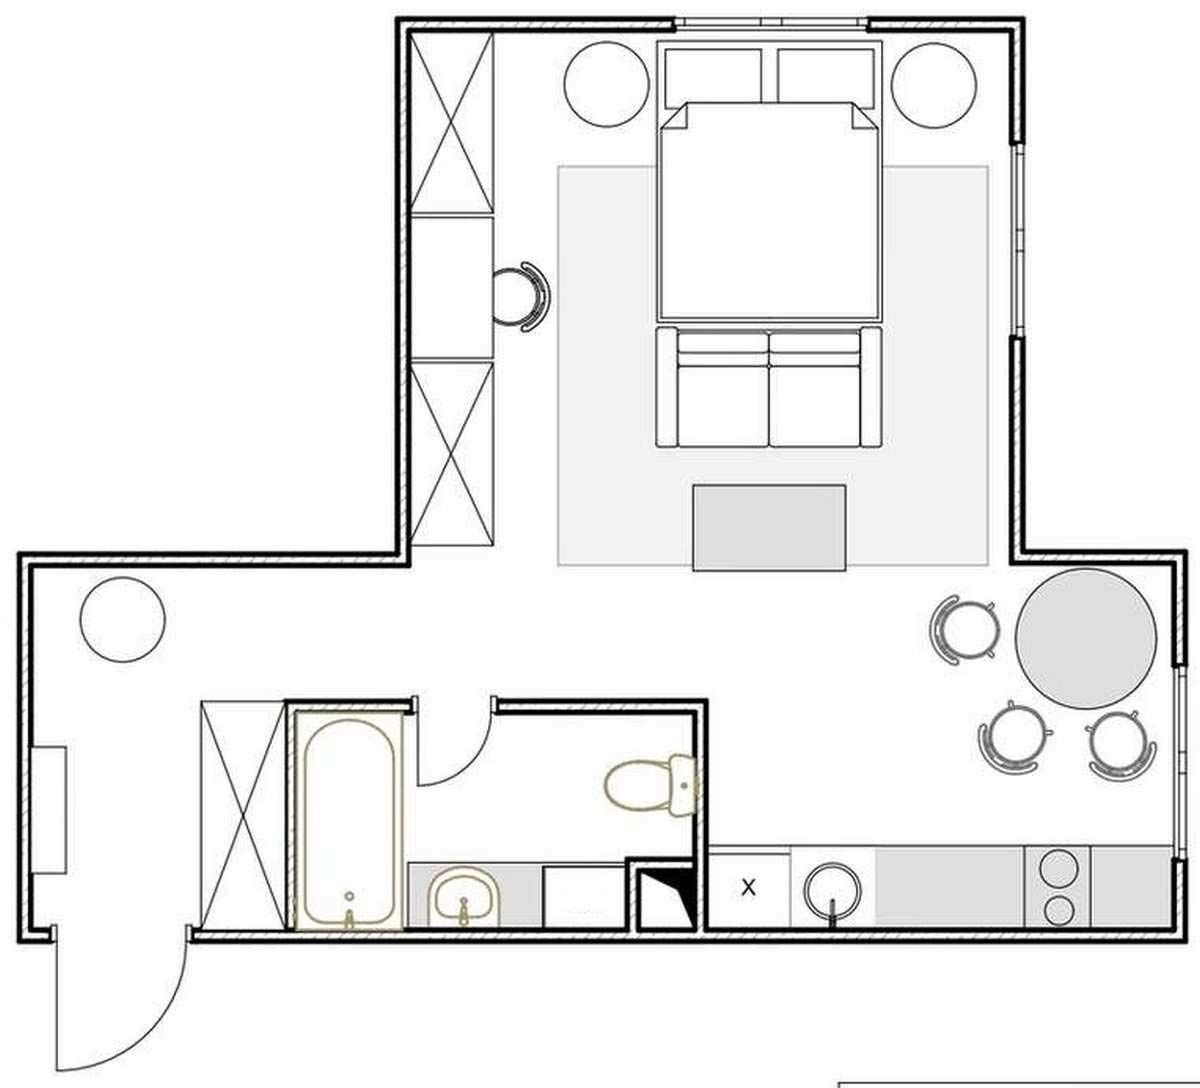 Kế hoạch sàn của căn hộ do nhà thiết kế nội thất cung cấp.